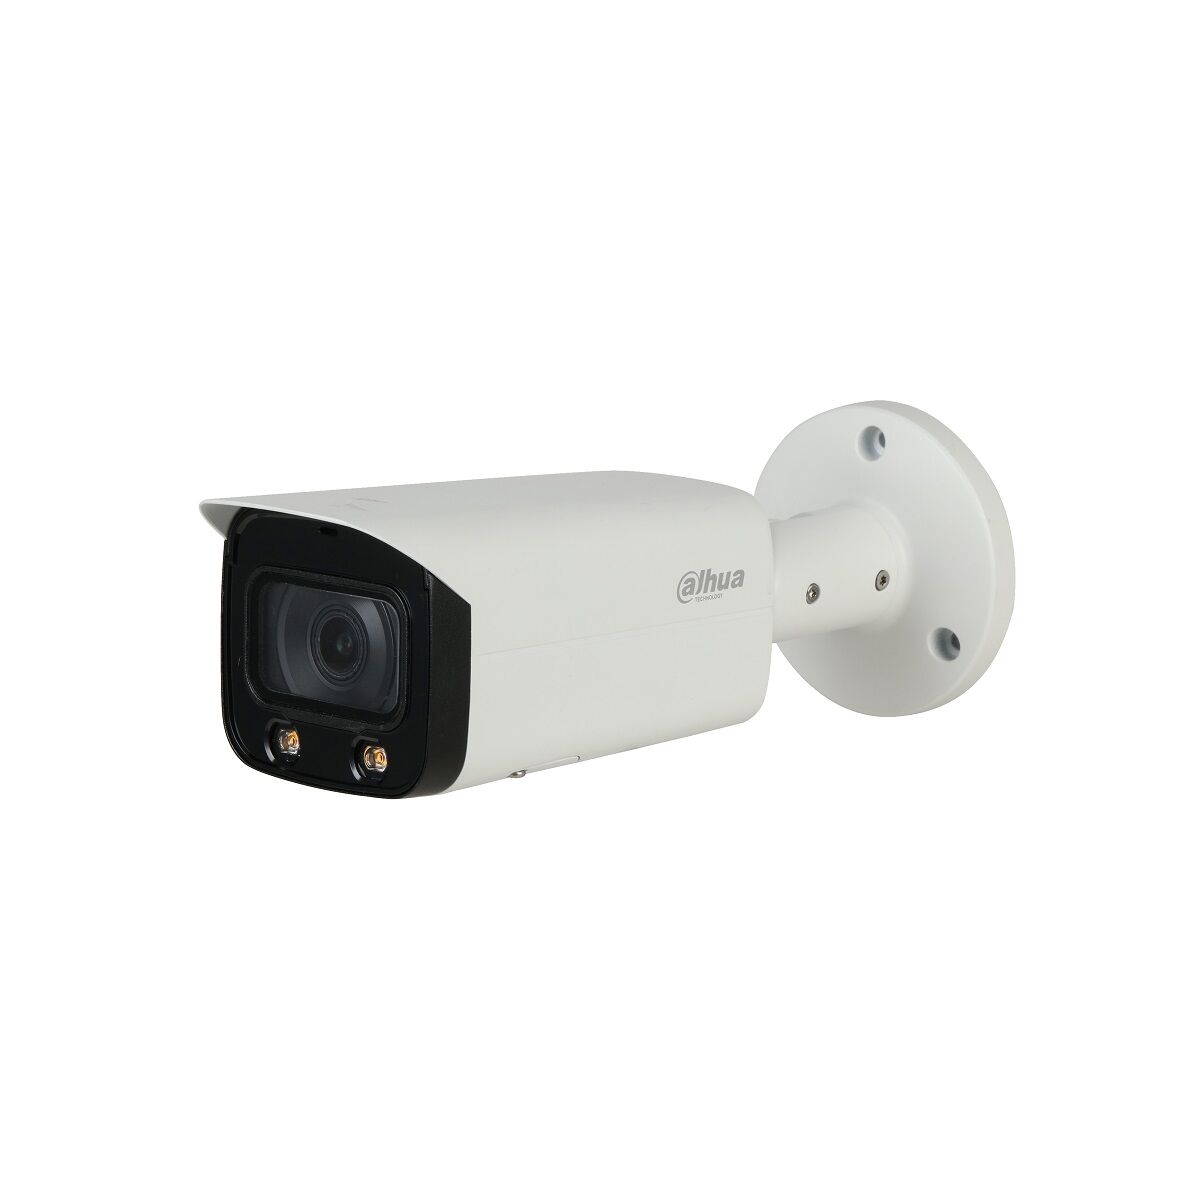 Dahua HFW5241TP-AS-LED surveillance camera with light sensitive sensor